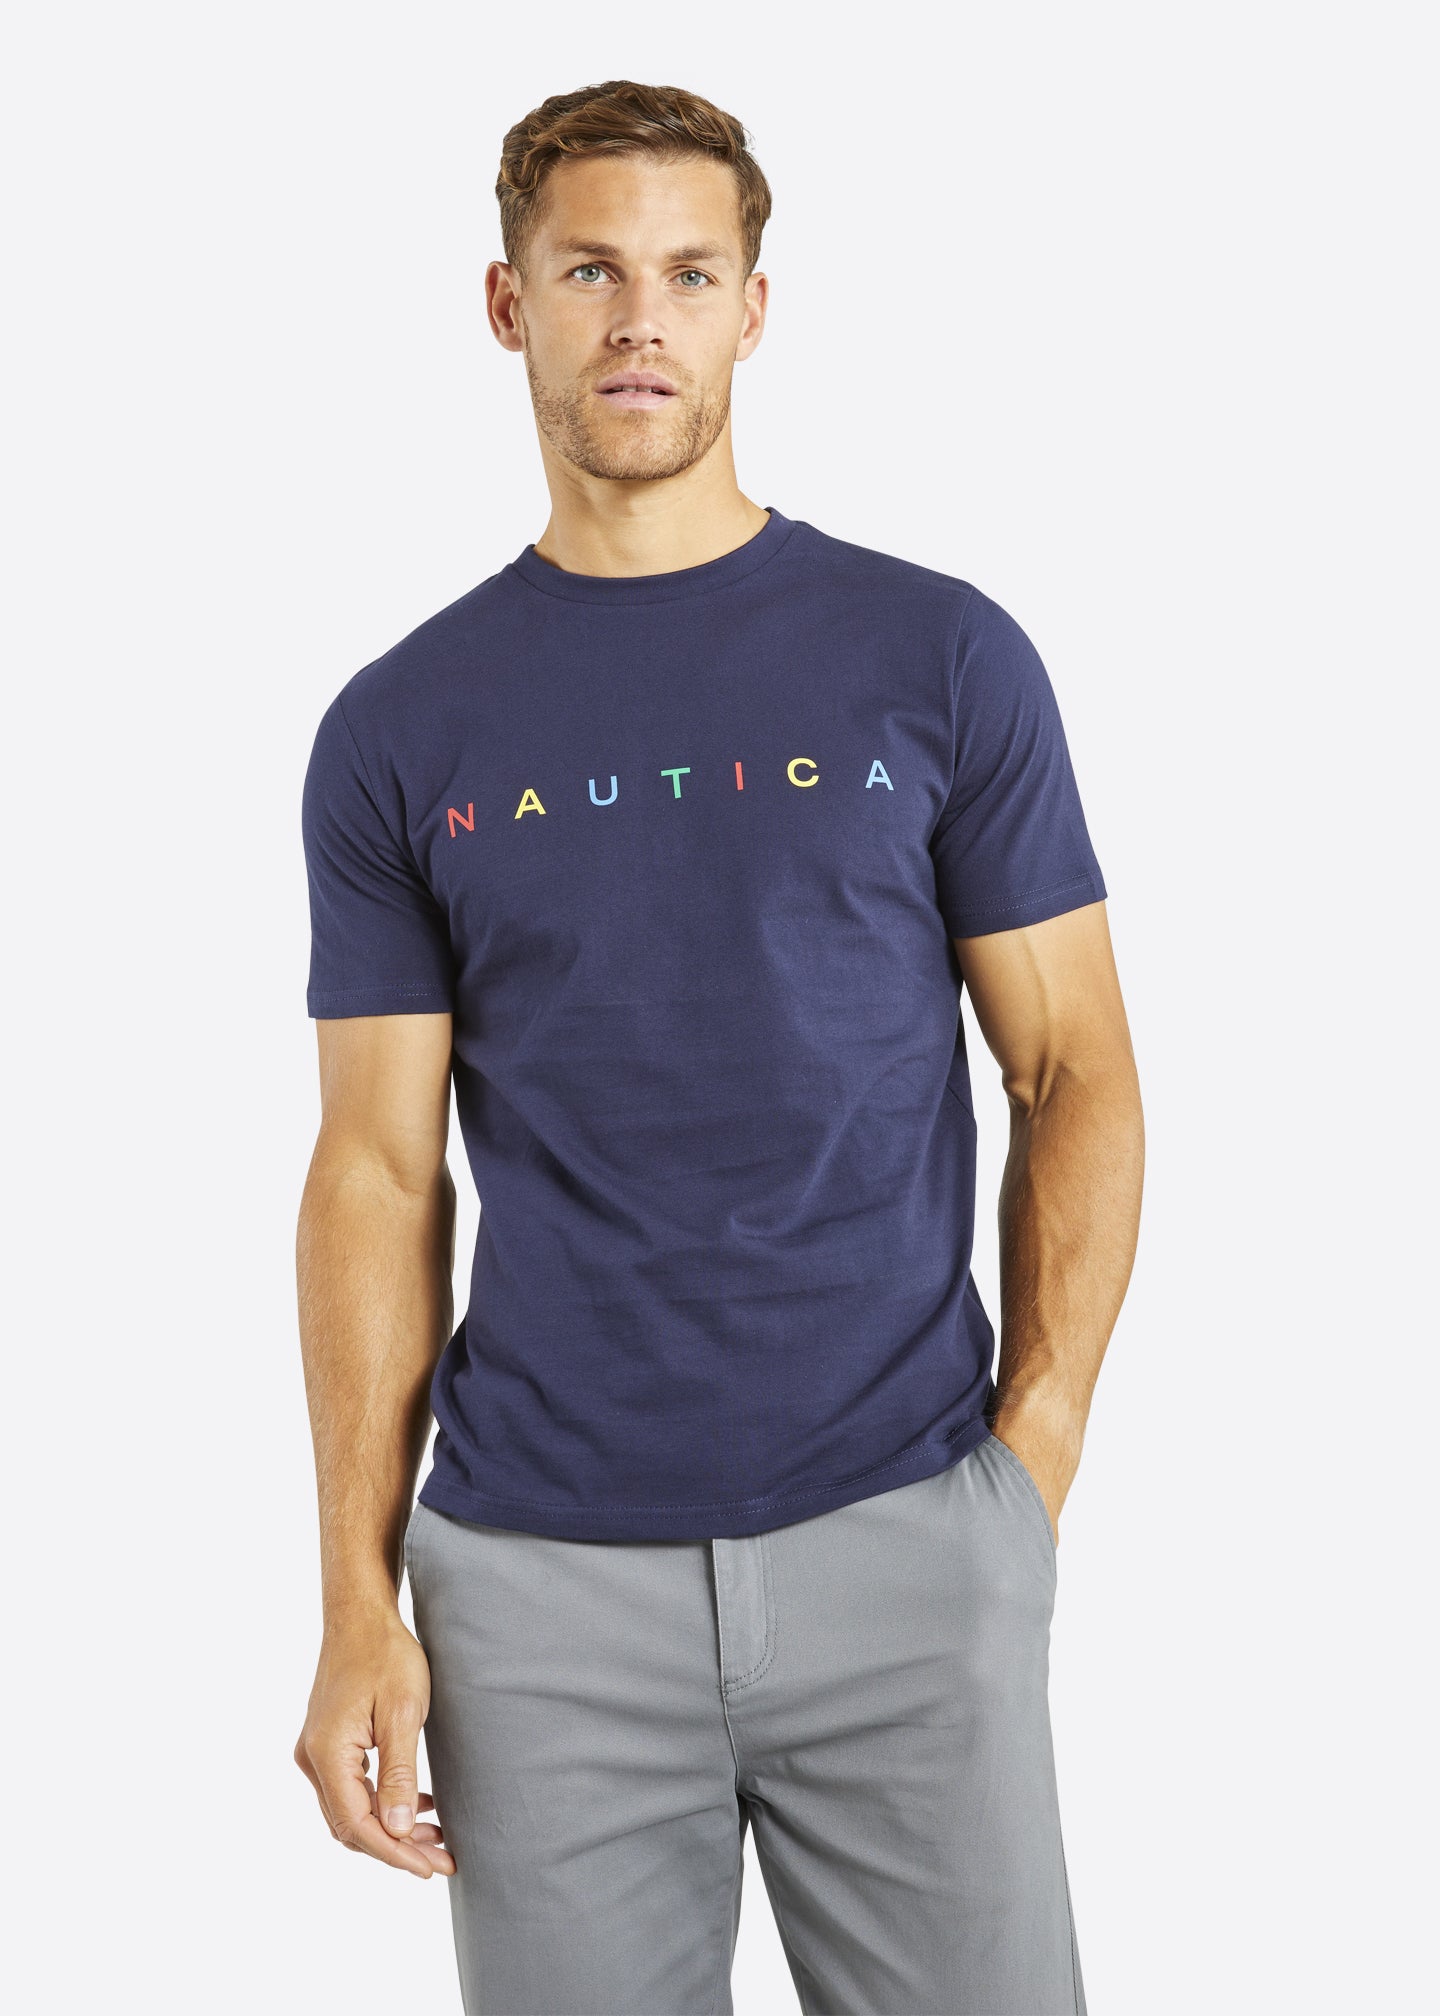 Nautica Keaton T-Shirt - Dark Navy - Front